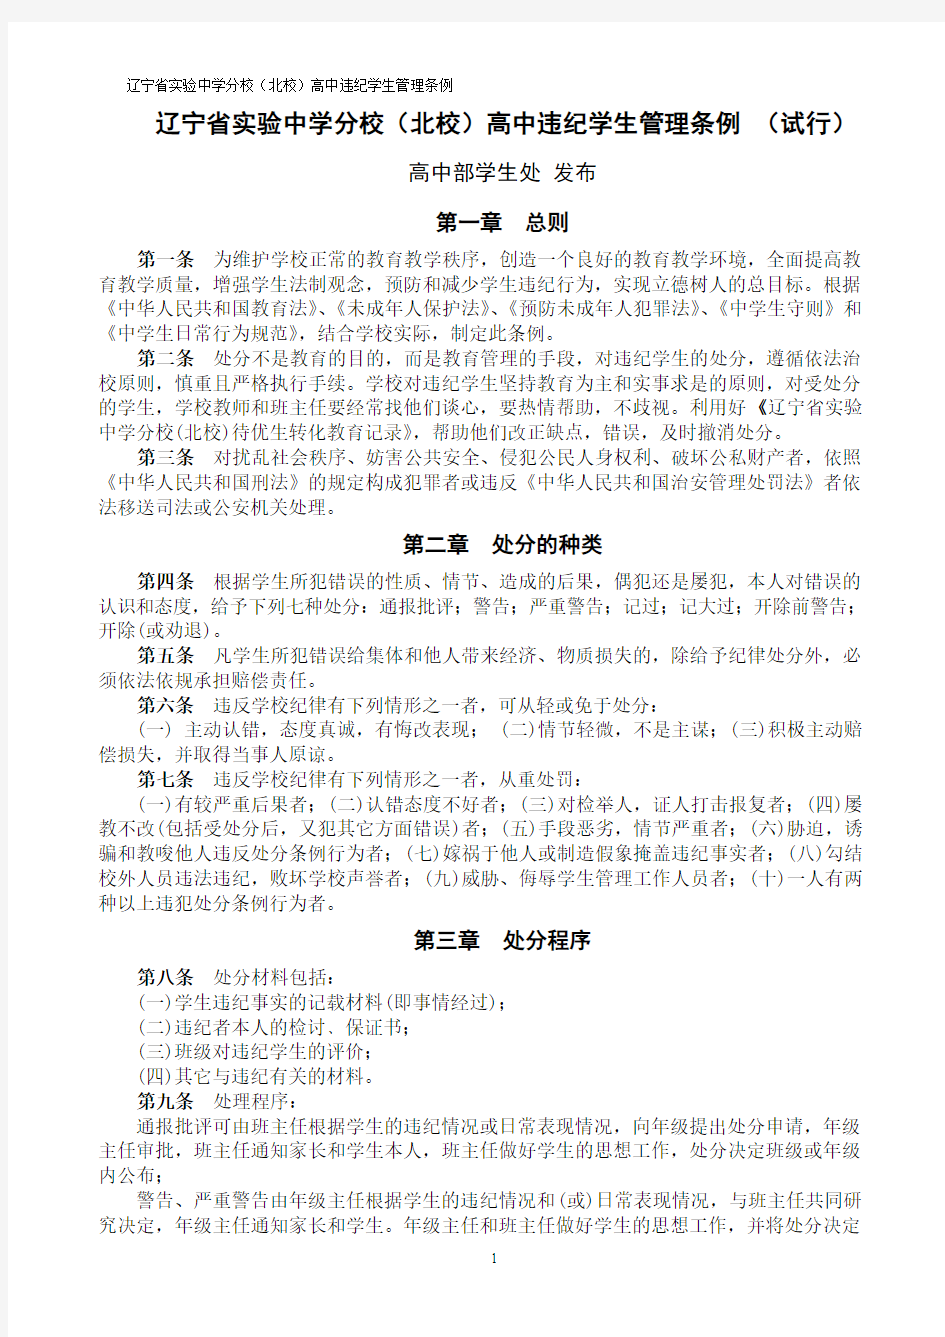 辽宁省实验中学分校(北校)高中学生违纪管理条例